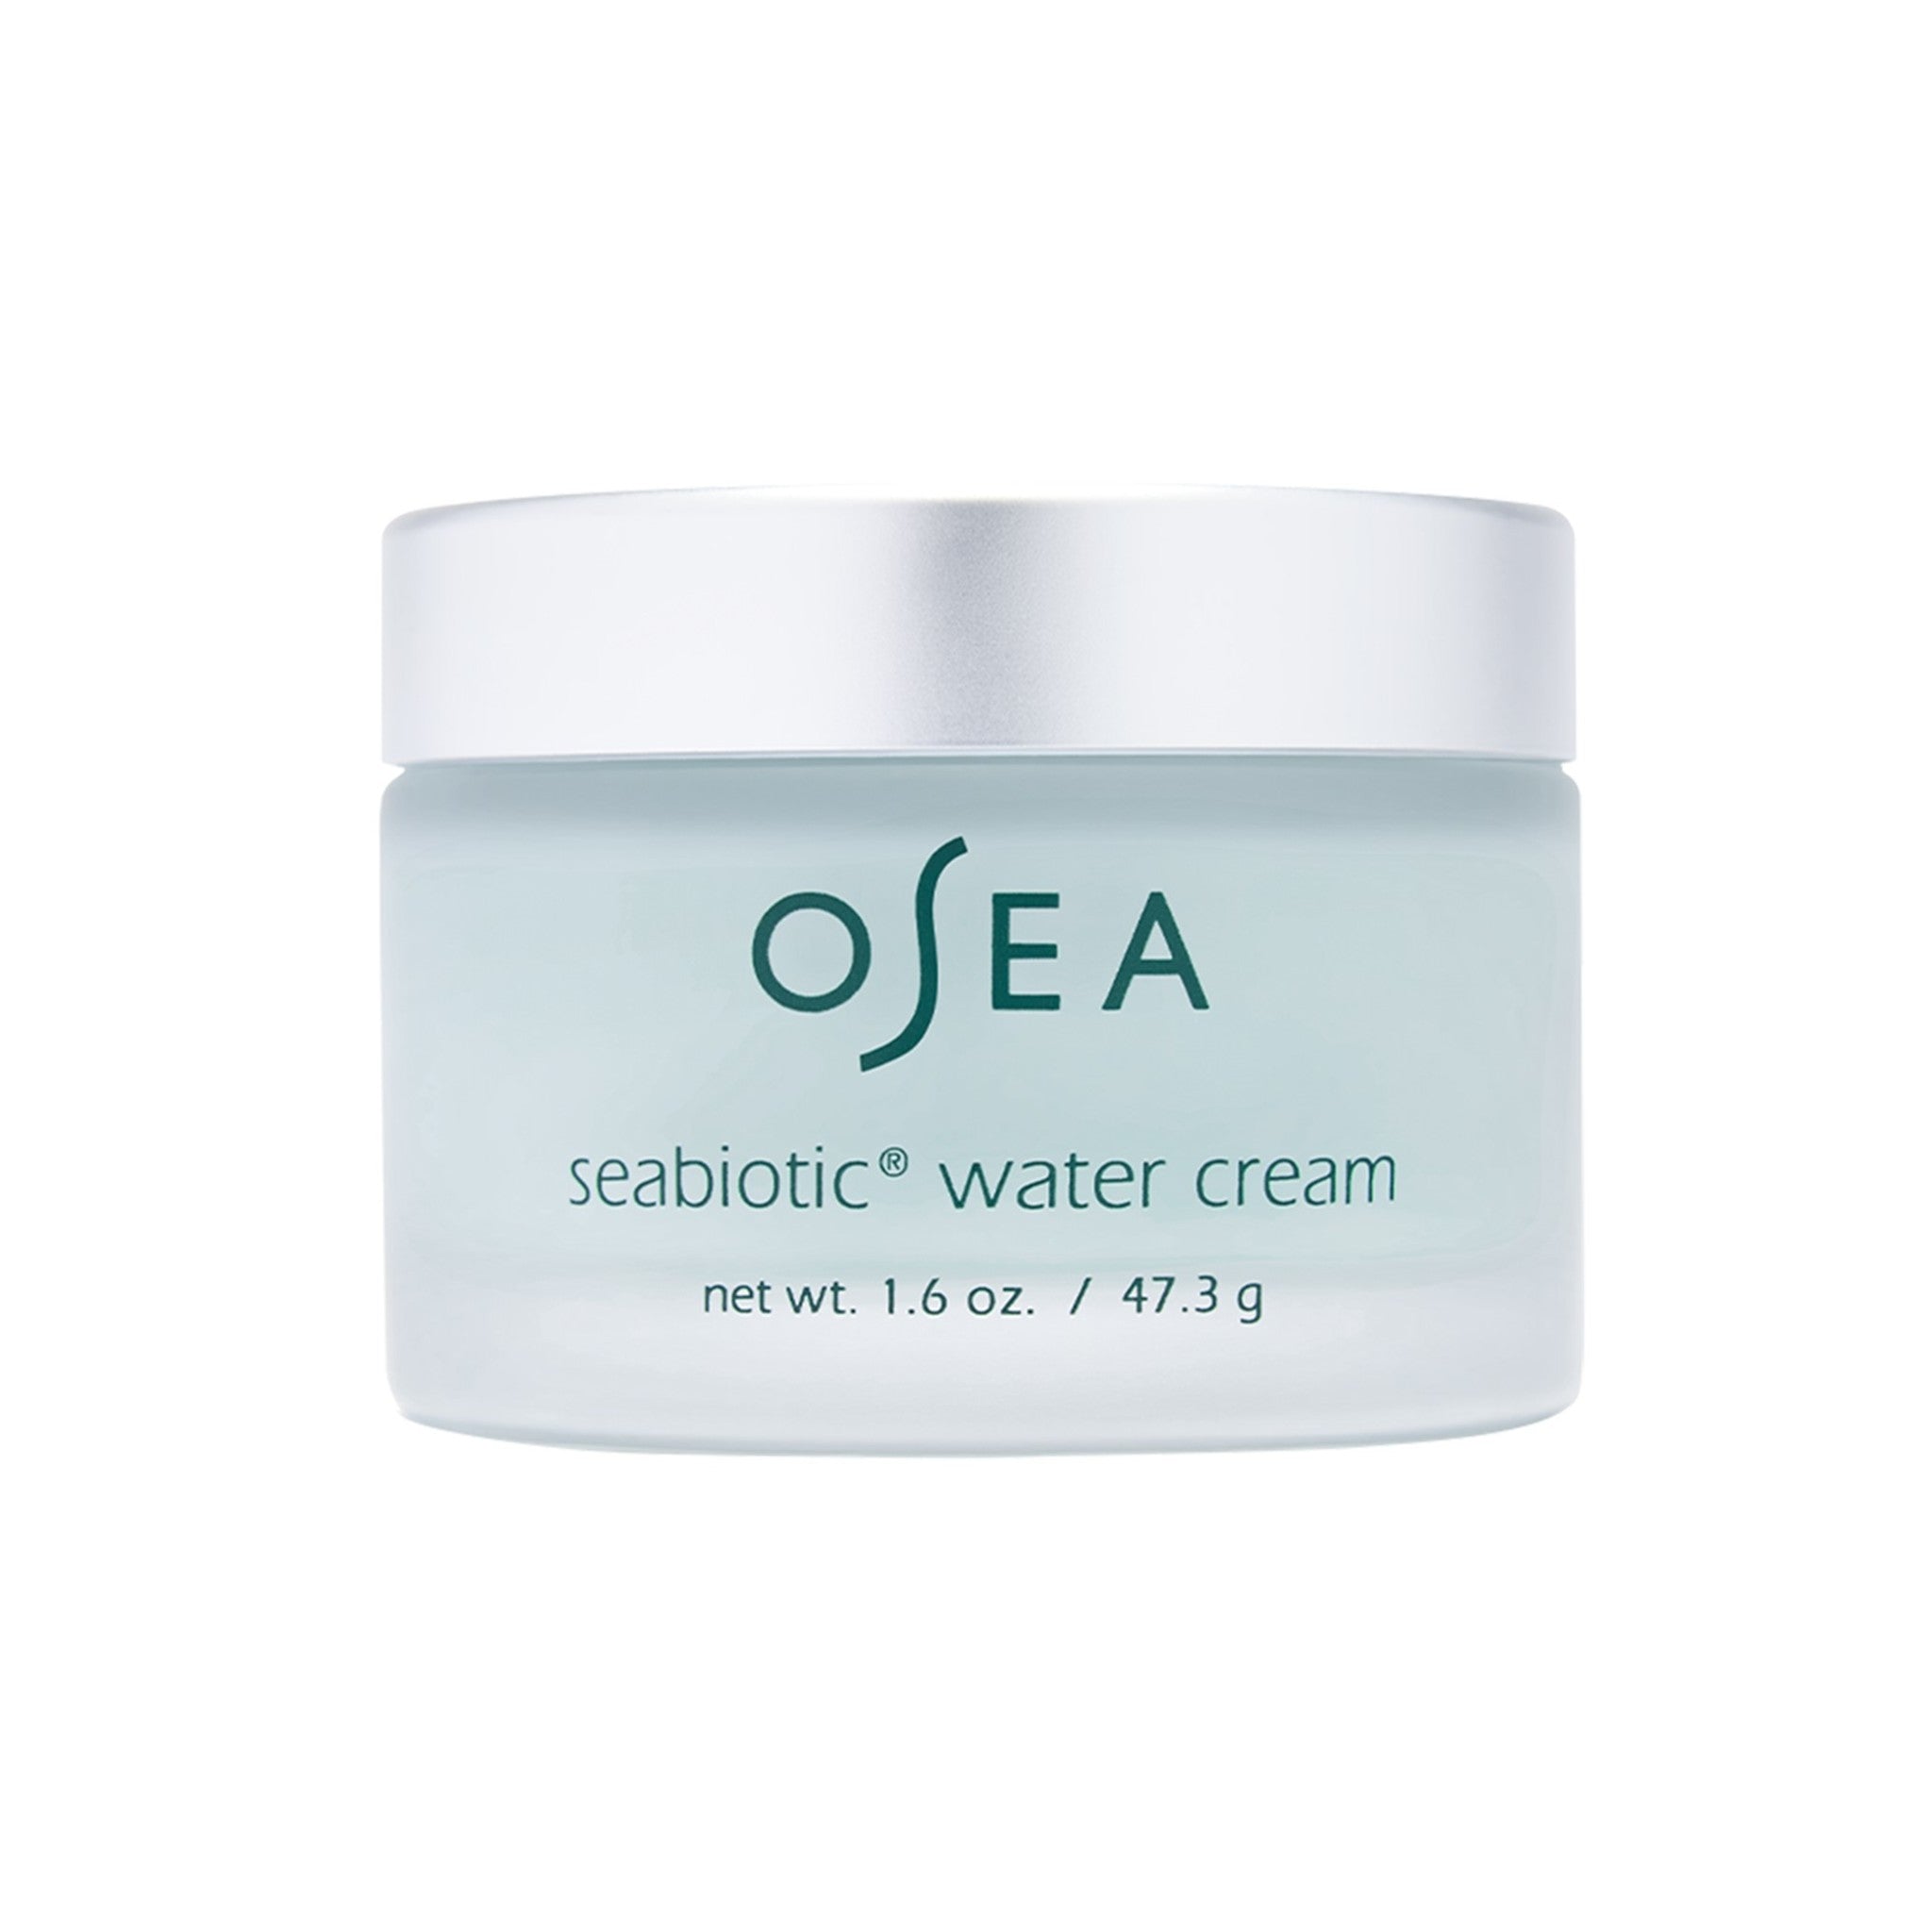 OSEA Seabiotic Water Cream main image.